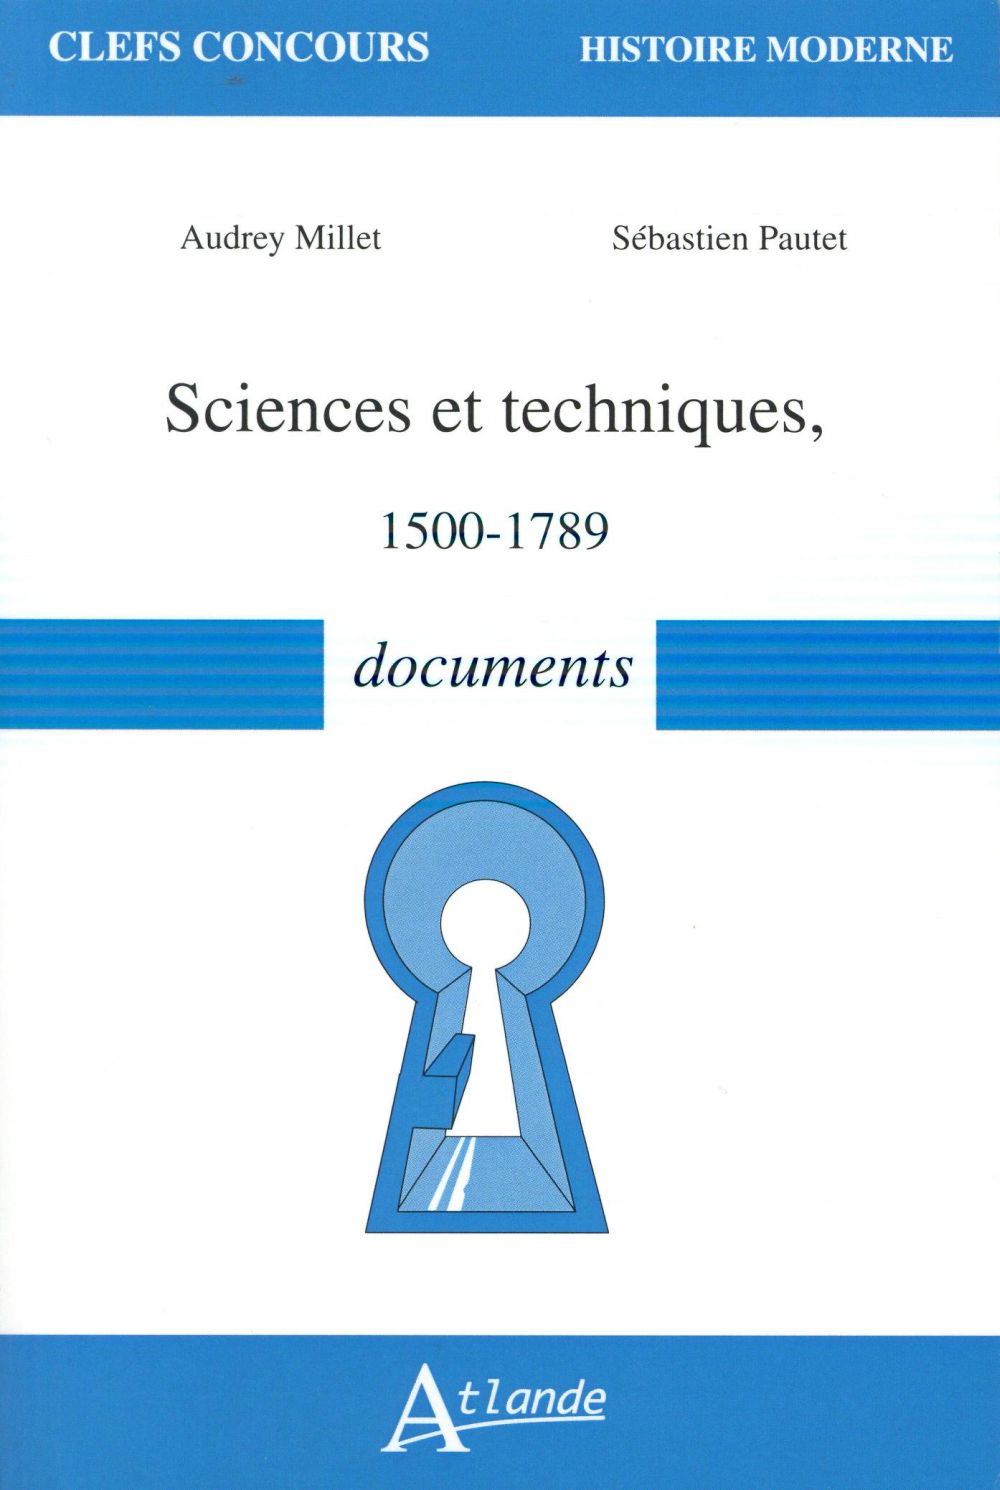 Sciences et des techniques (1500-1789), Neuilly, Atlande, 2016